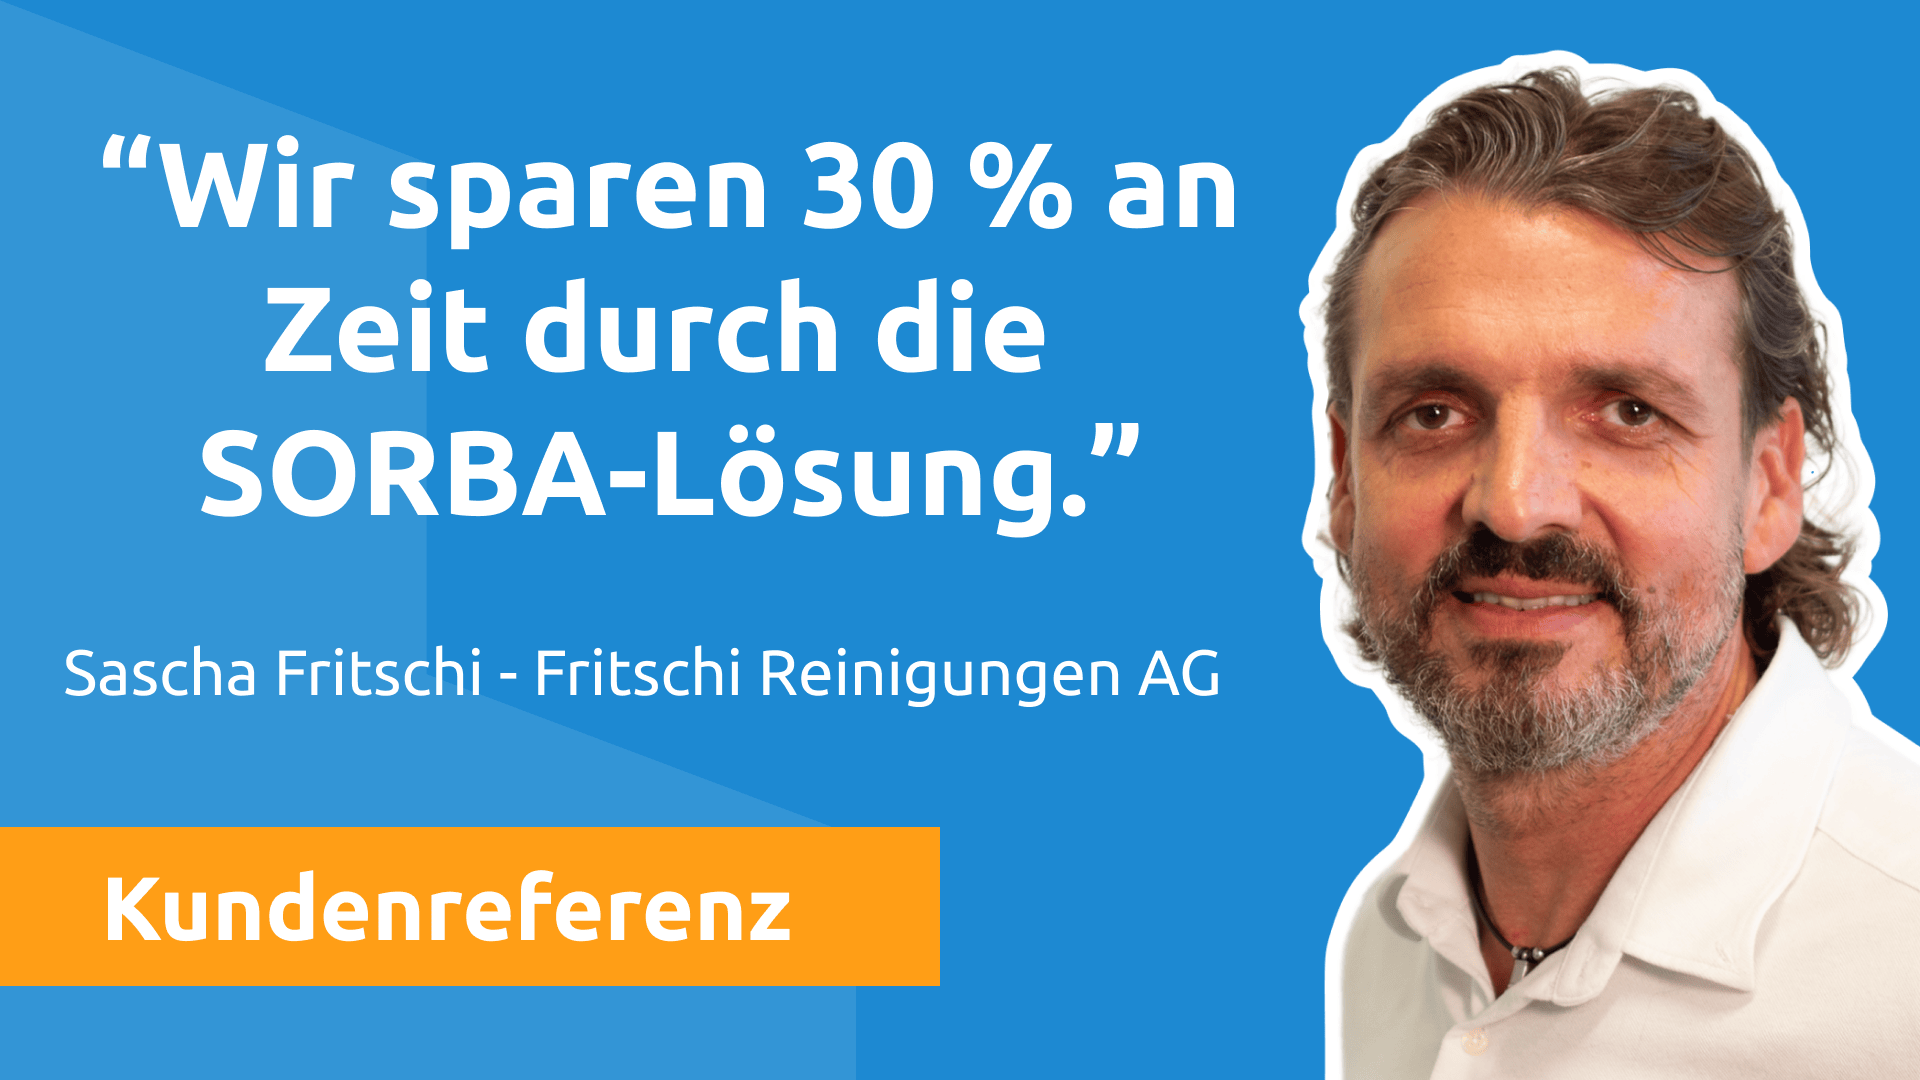 Referenzbericht Fritschi Reinigungen AG